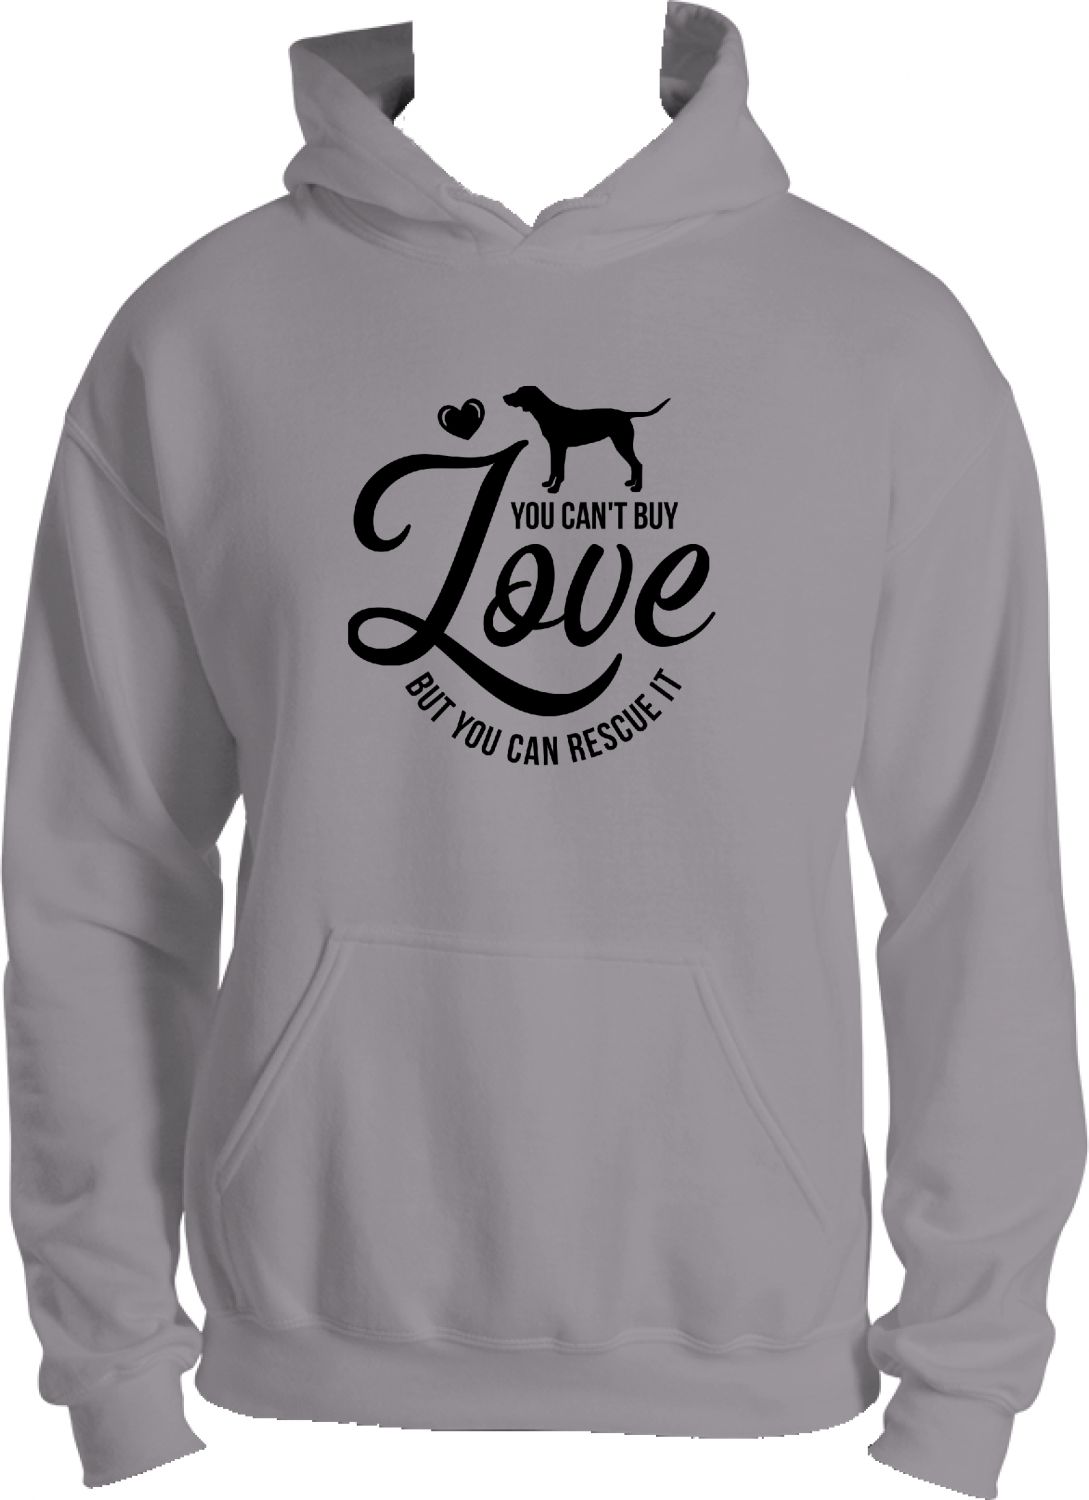 Can't Buy Love Sweatshirt